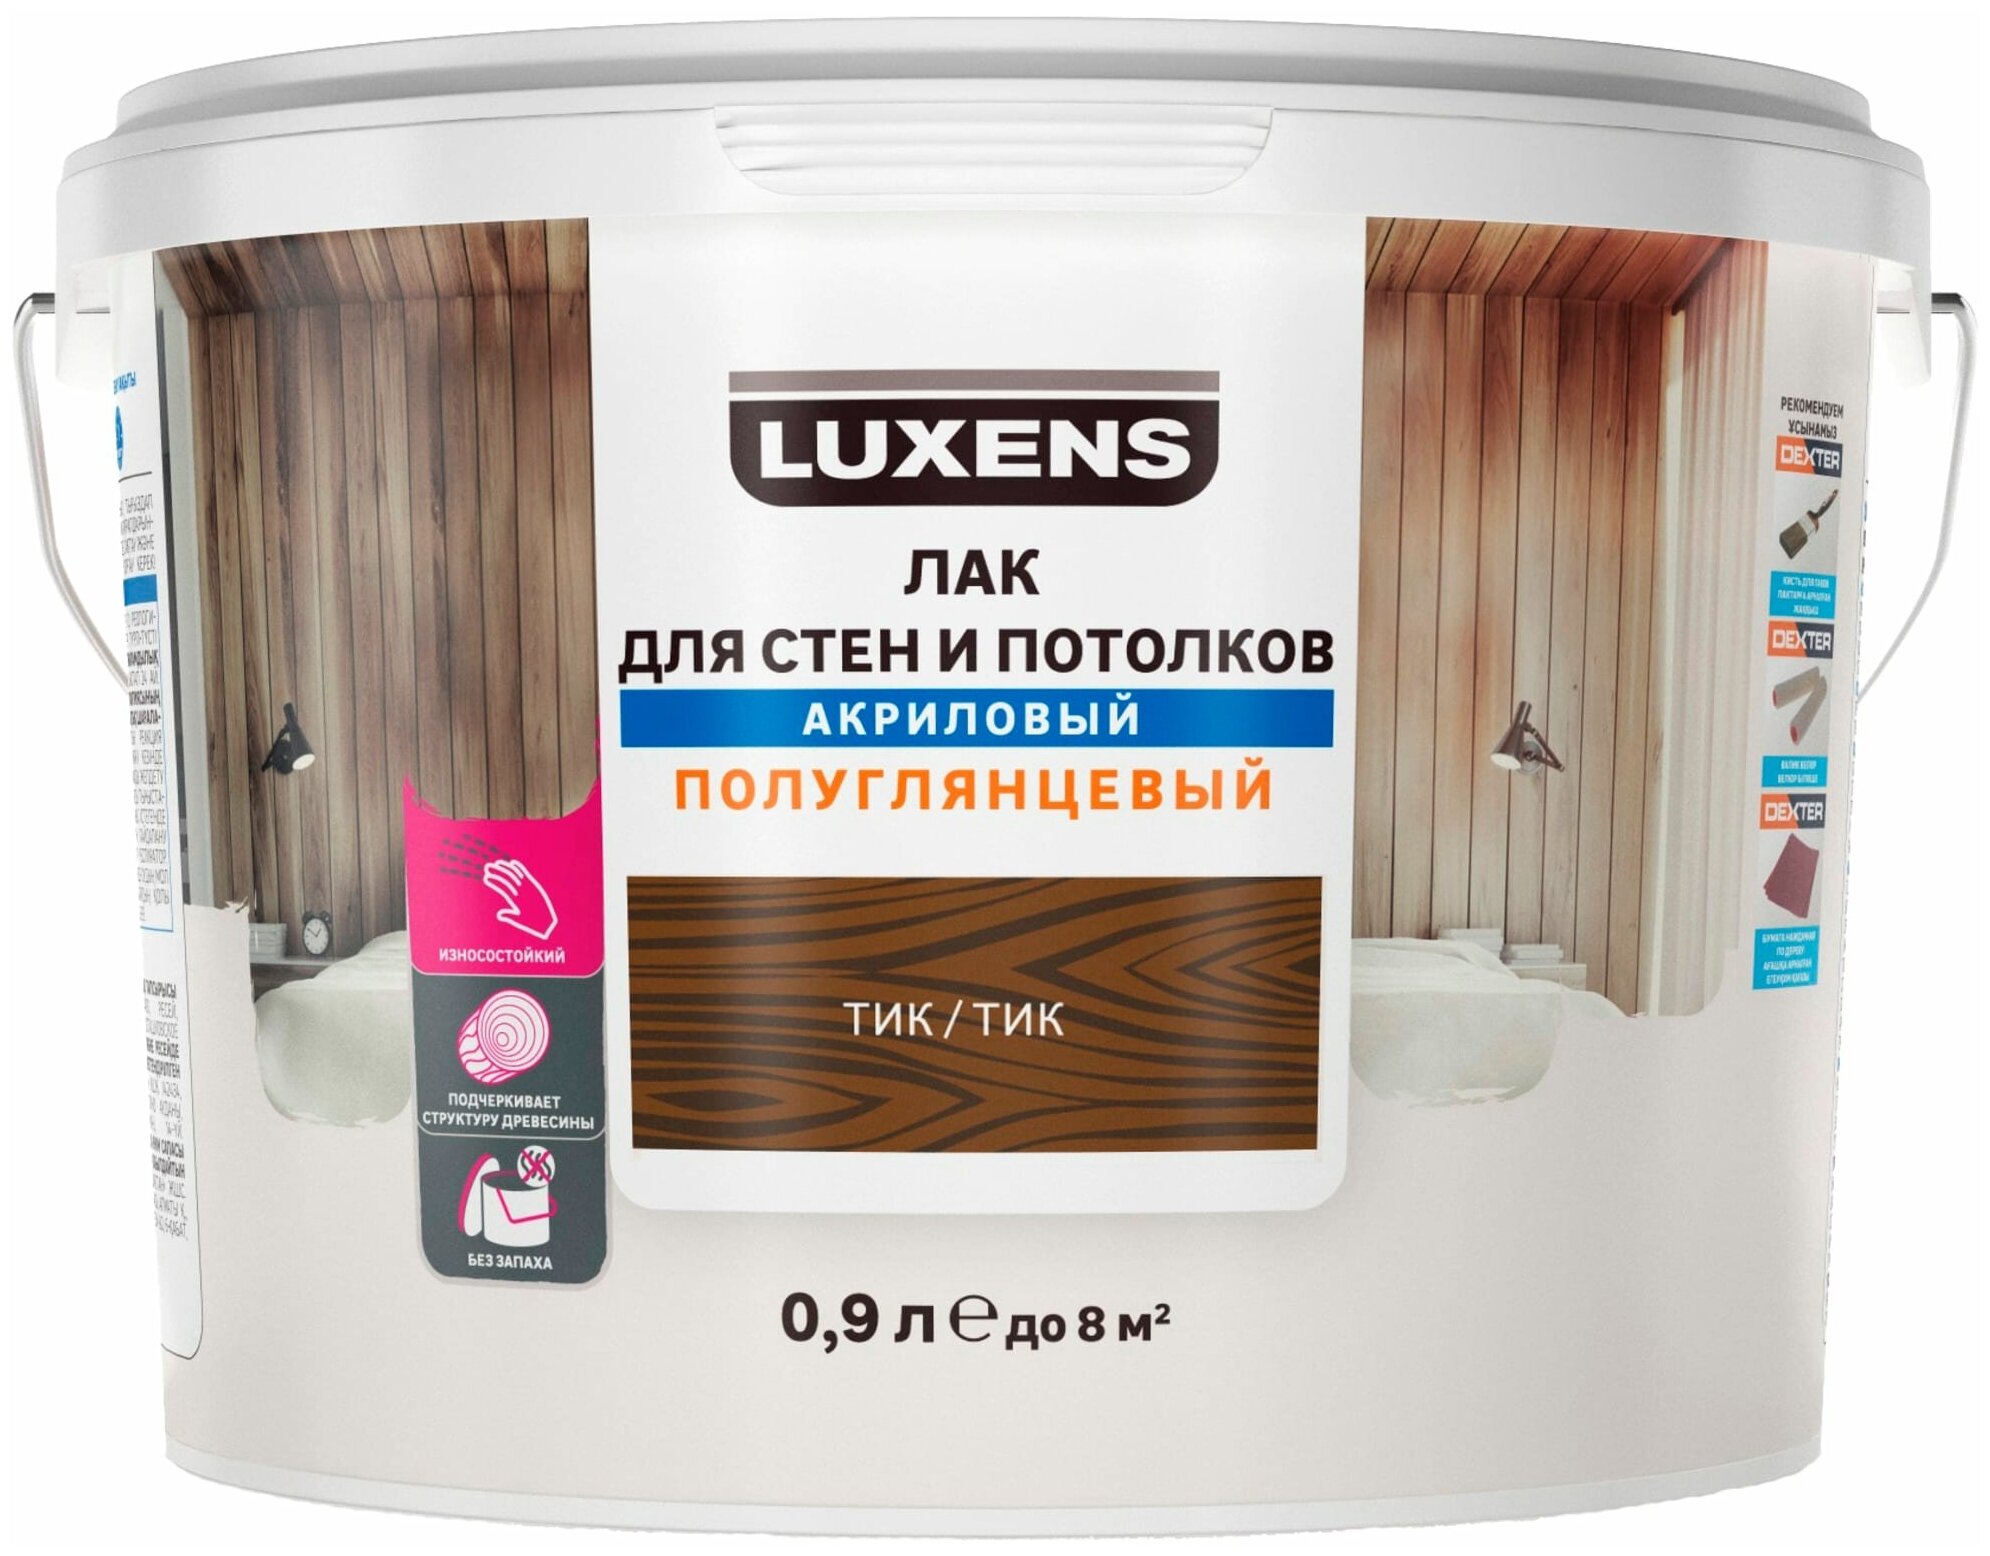 Лак для стен и потолков Luxens акриловый цвет тик полуглянцевый 0.9 л